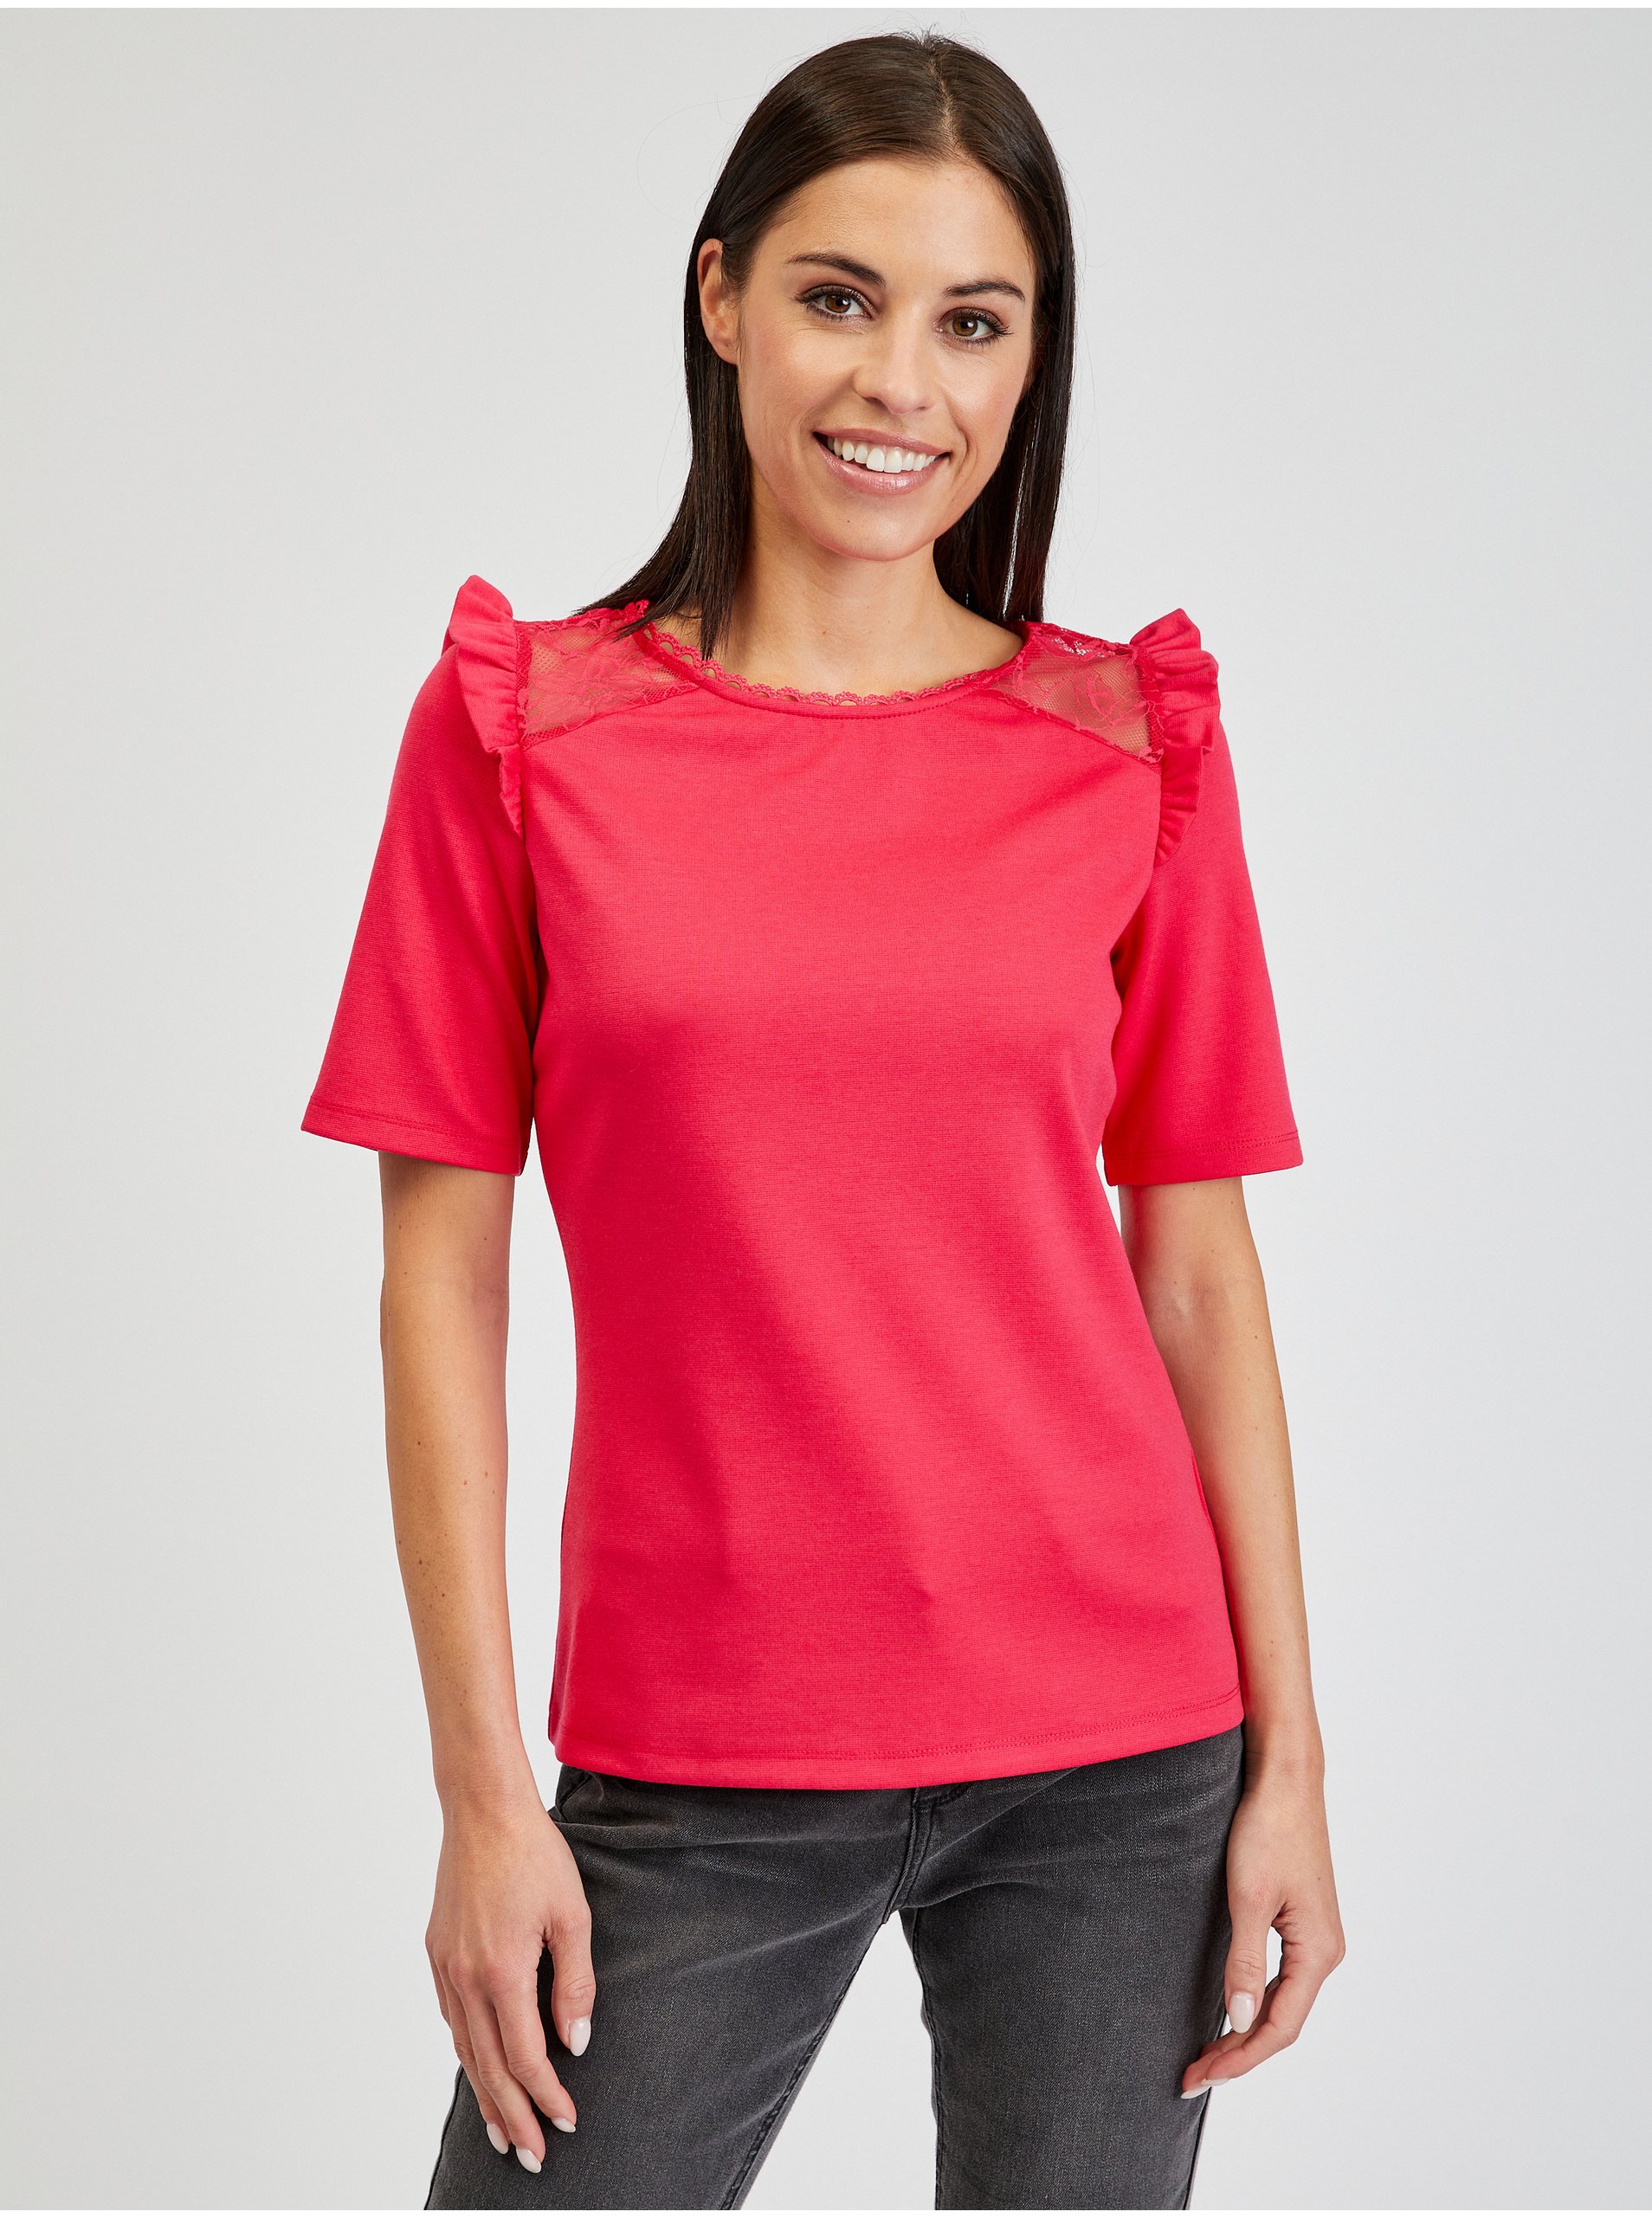 E-shop Tmavě růžové dámské tričko s průstřihem na zádech ORSAY